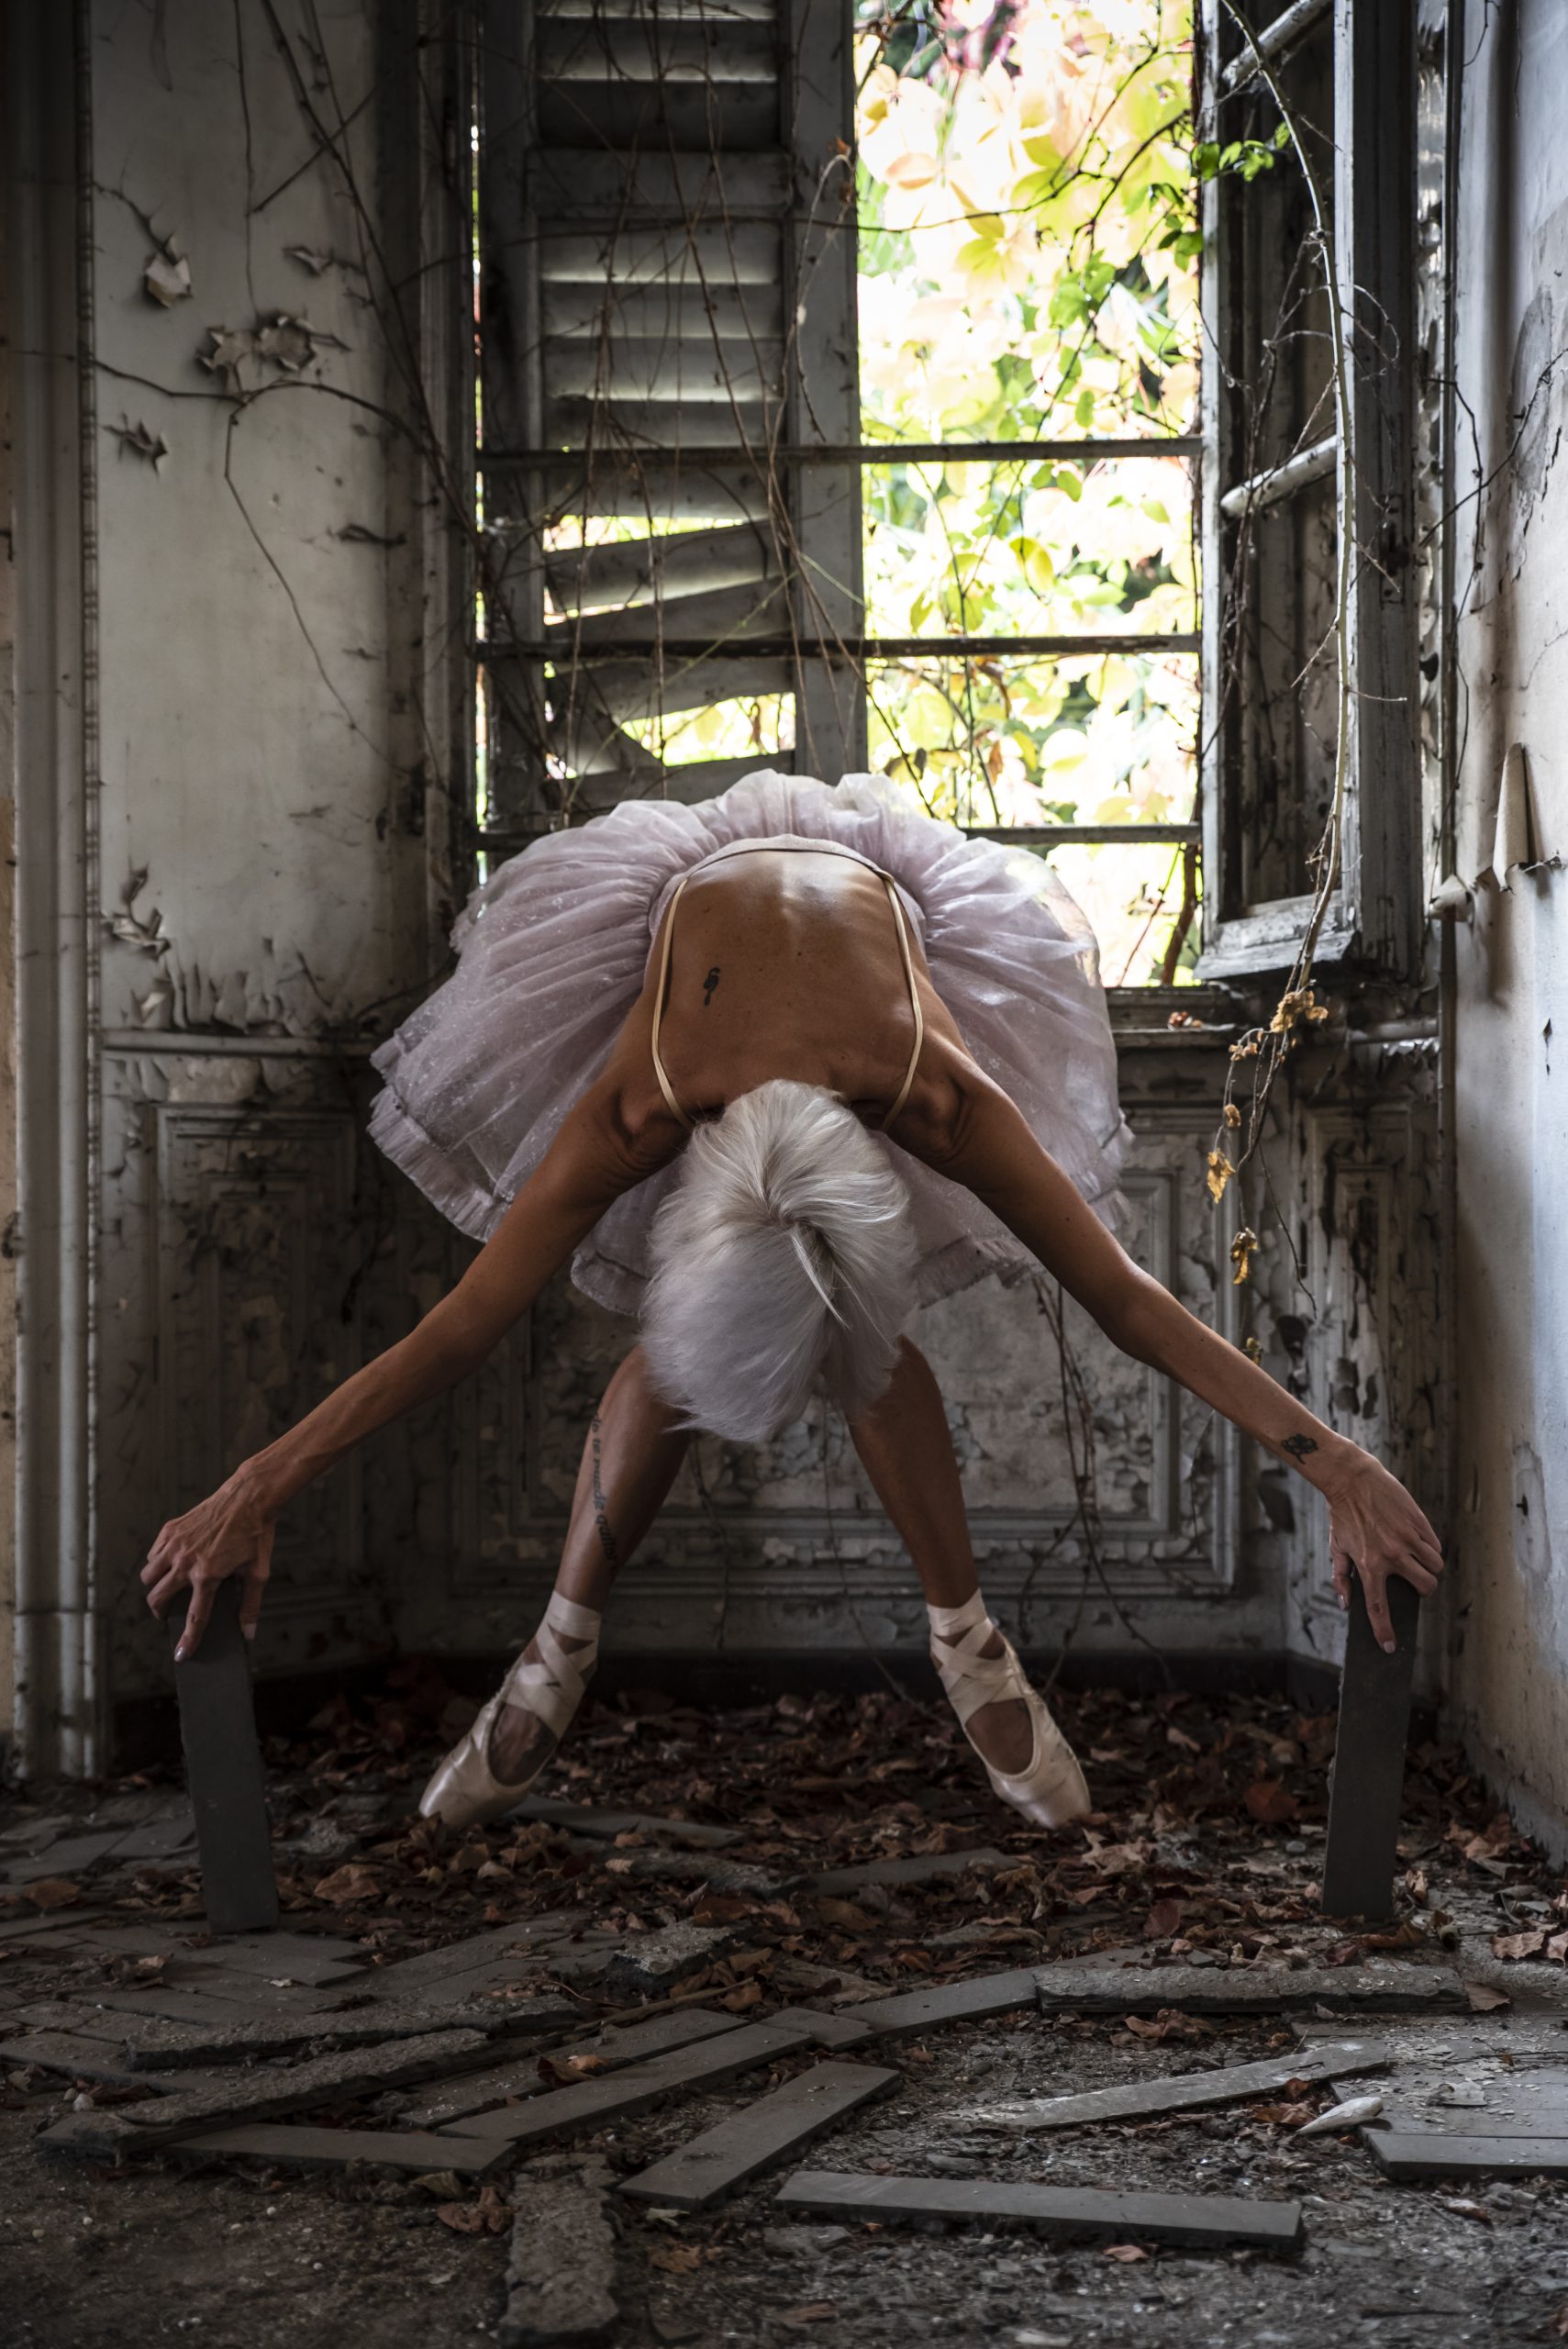 L'inchino di una ballerina in tutù in una casa abbandonata